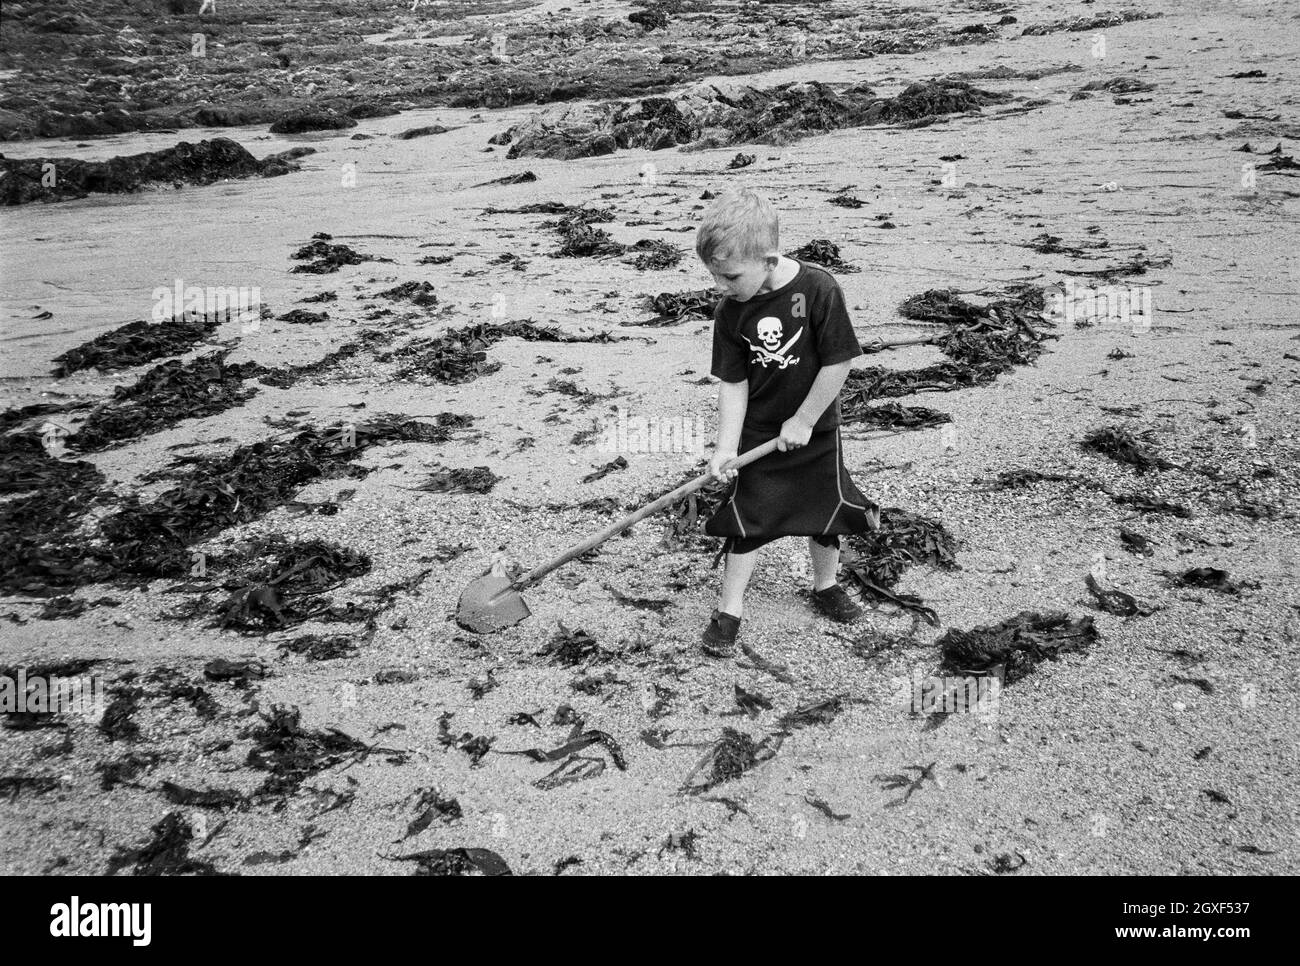 Garçon de quatre ans jouant à Hope Cove, Devon, Angleterre, Royaume-Uni. Banque D'Images